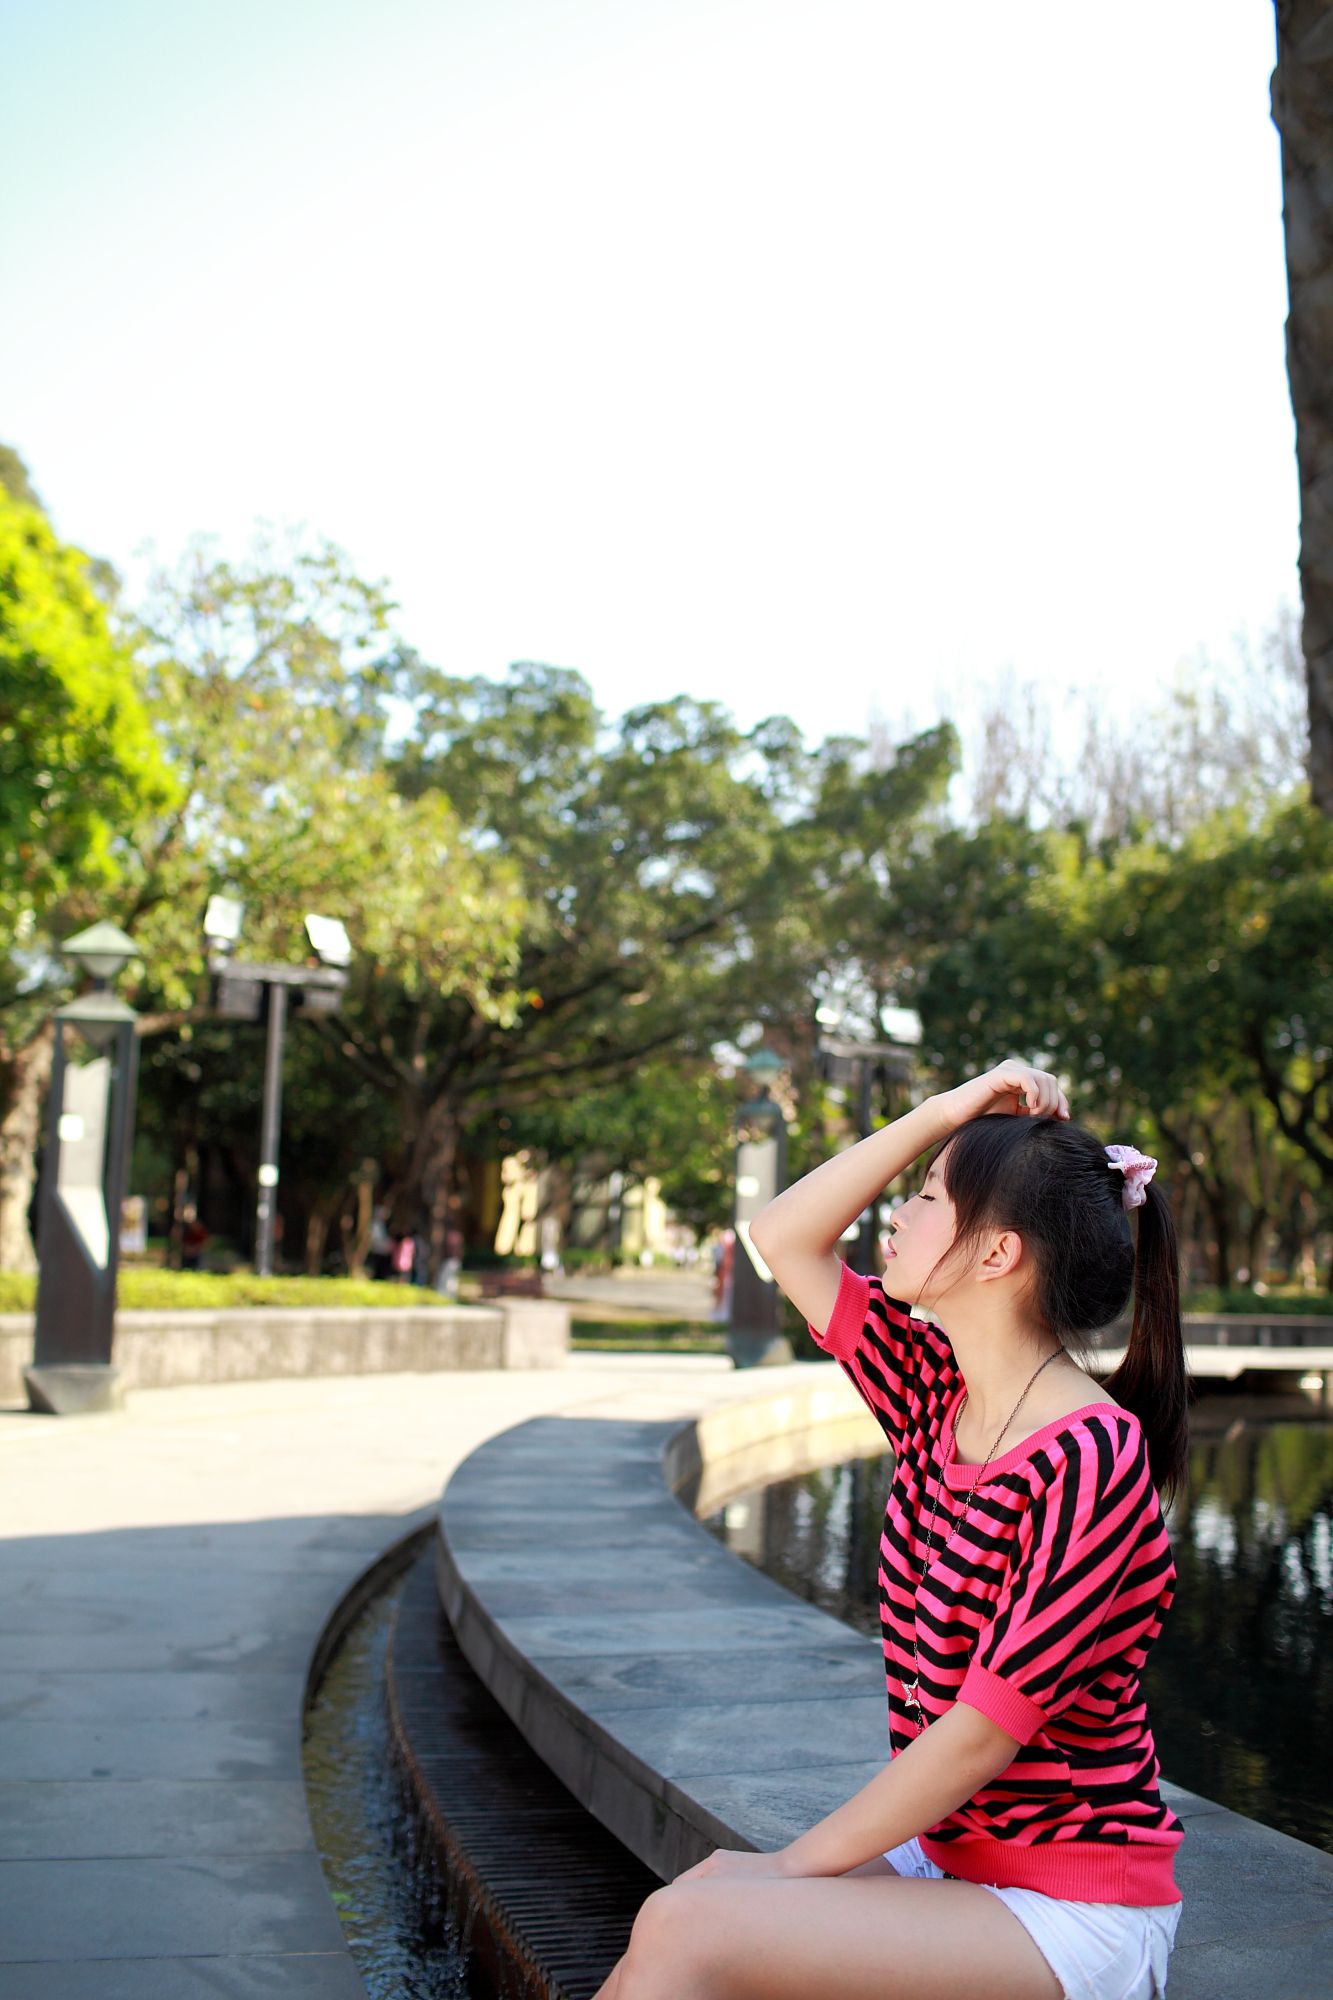 Taiwán hermosa niña Xiaojing / Yu Chengjing "4 juegos de pequeñas imágenes frescas al aire libre" colección de fotos Página 53 No.4b2eee